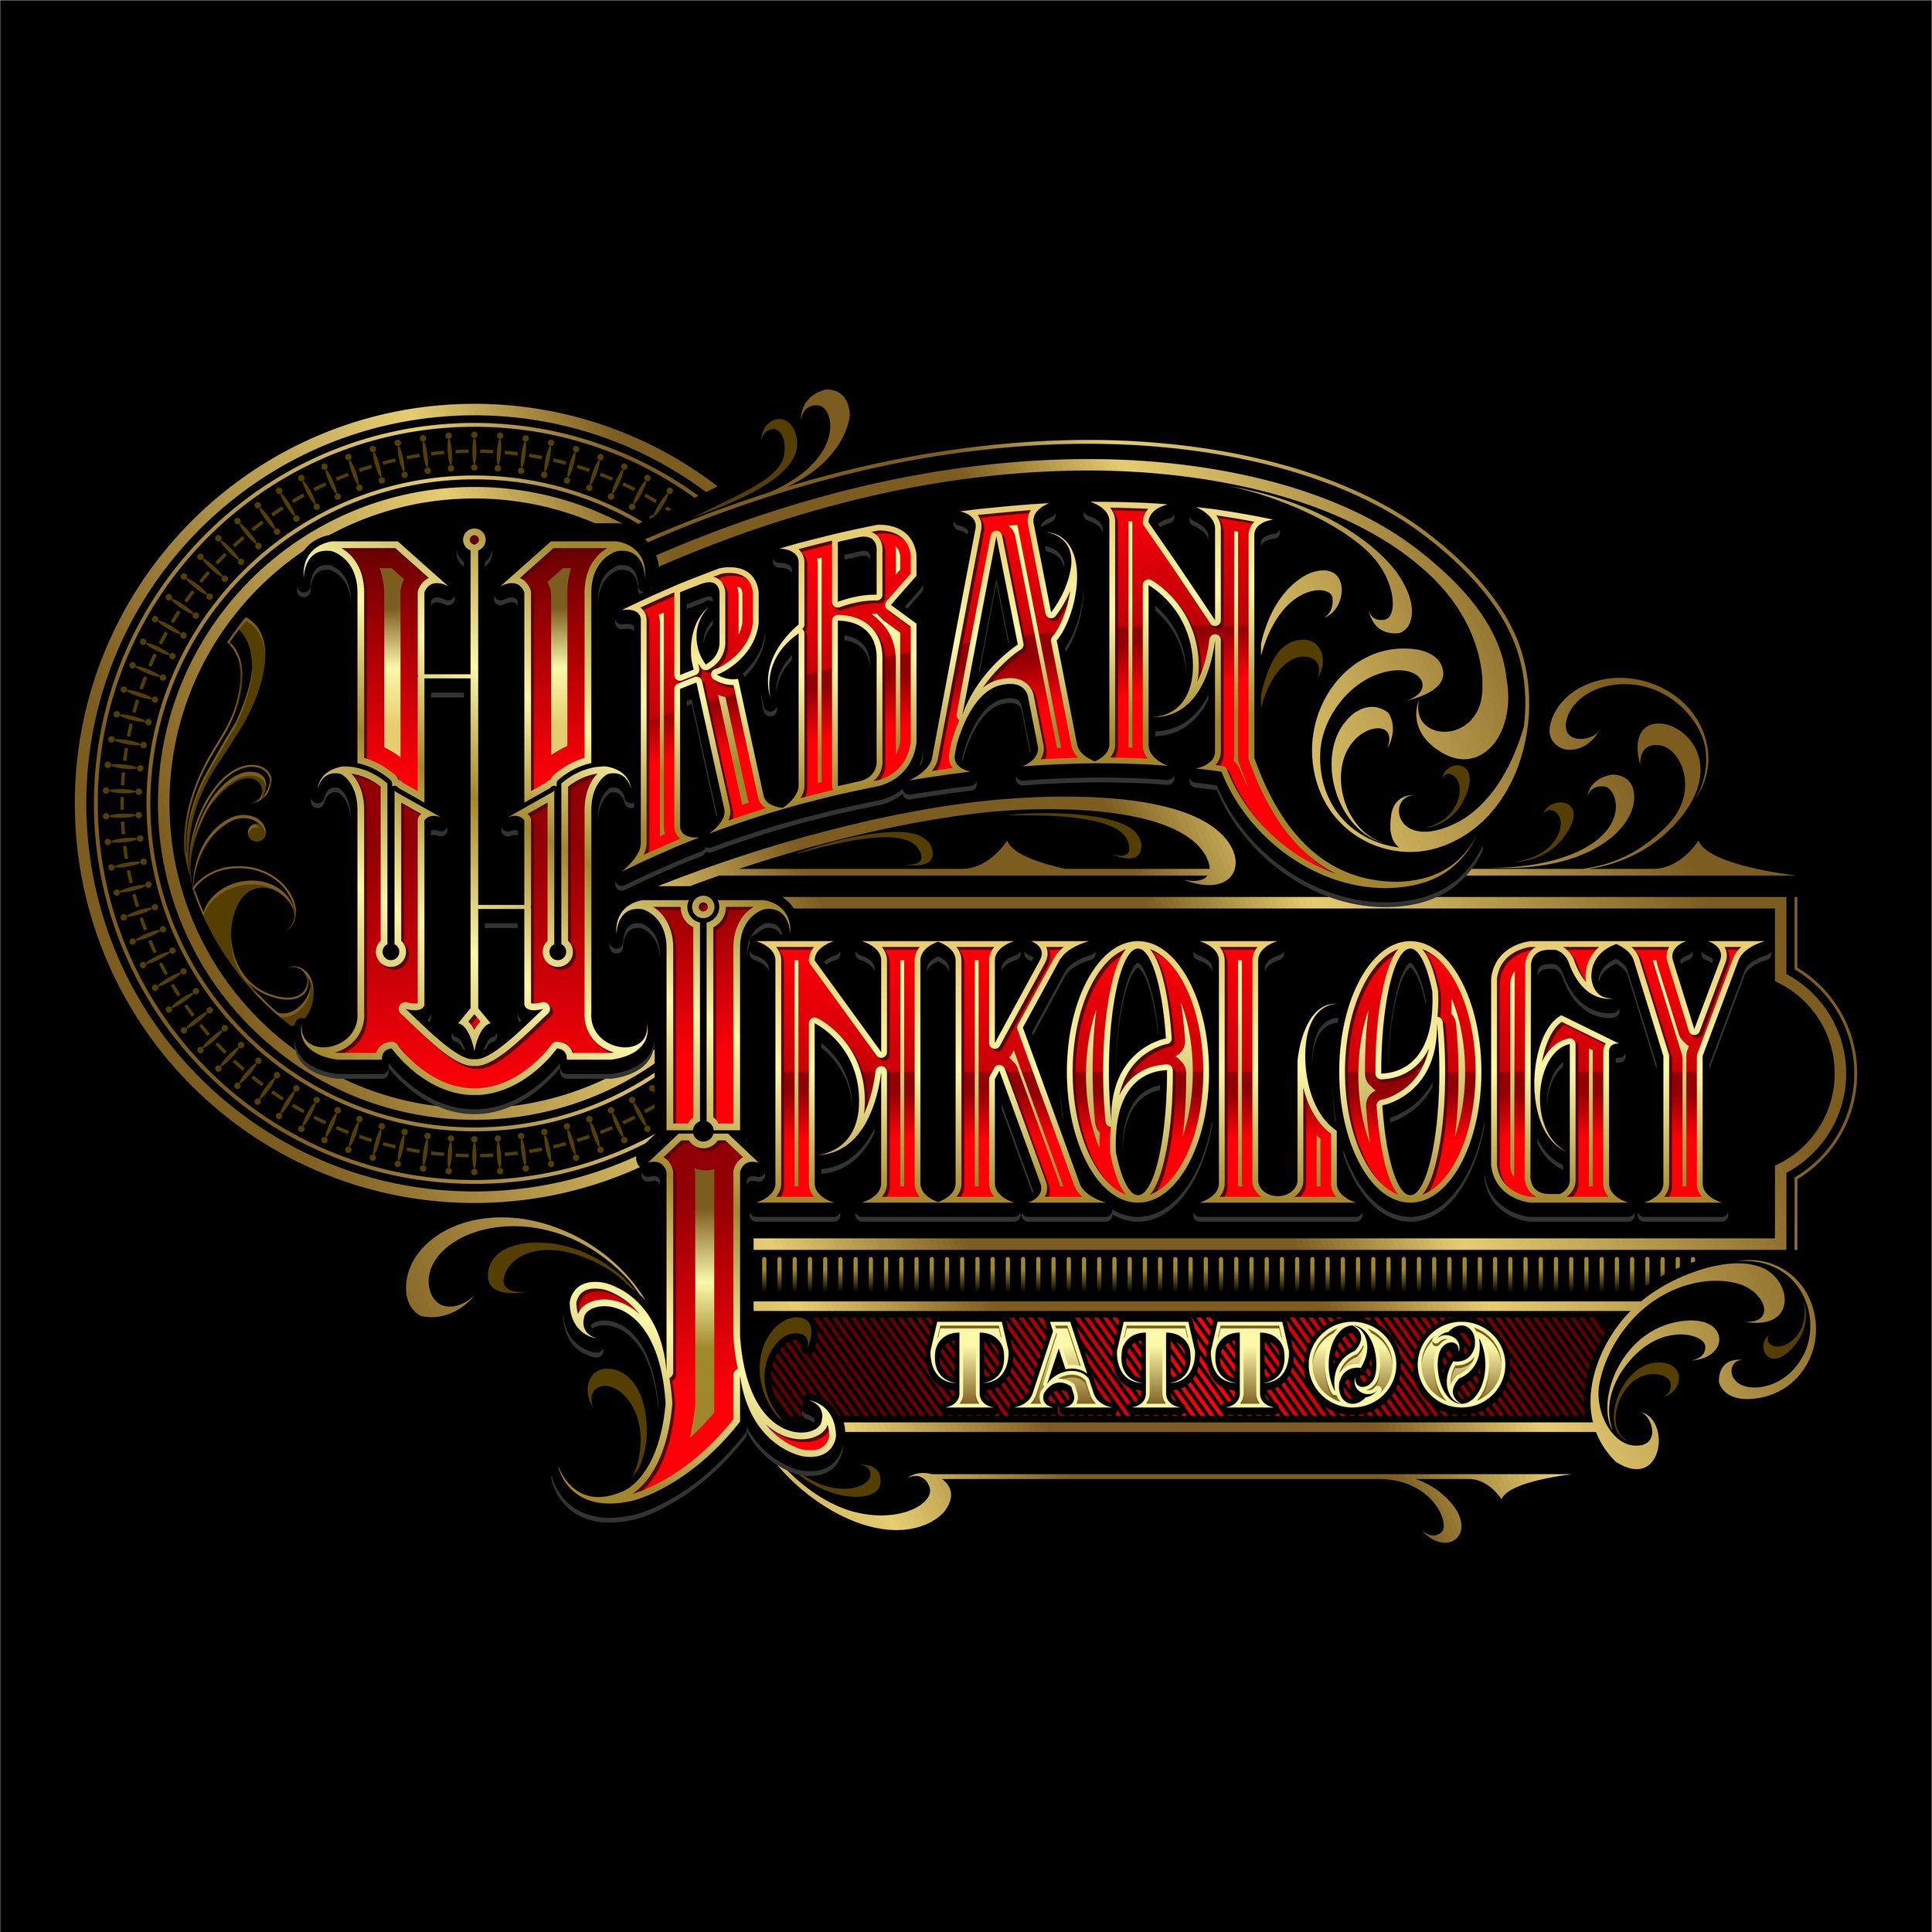 Urban Ink Tattoos Ideas Willow tree tattoo david | Willow tree tattoos,  Tattoo designs, Tree tattoo